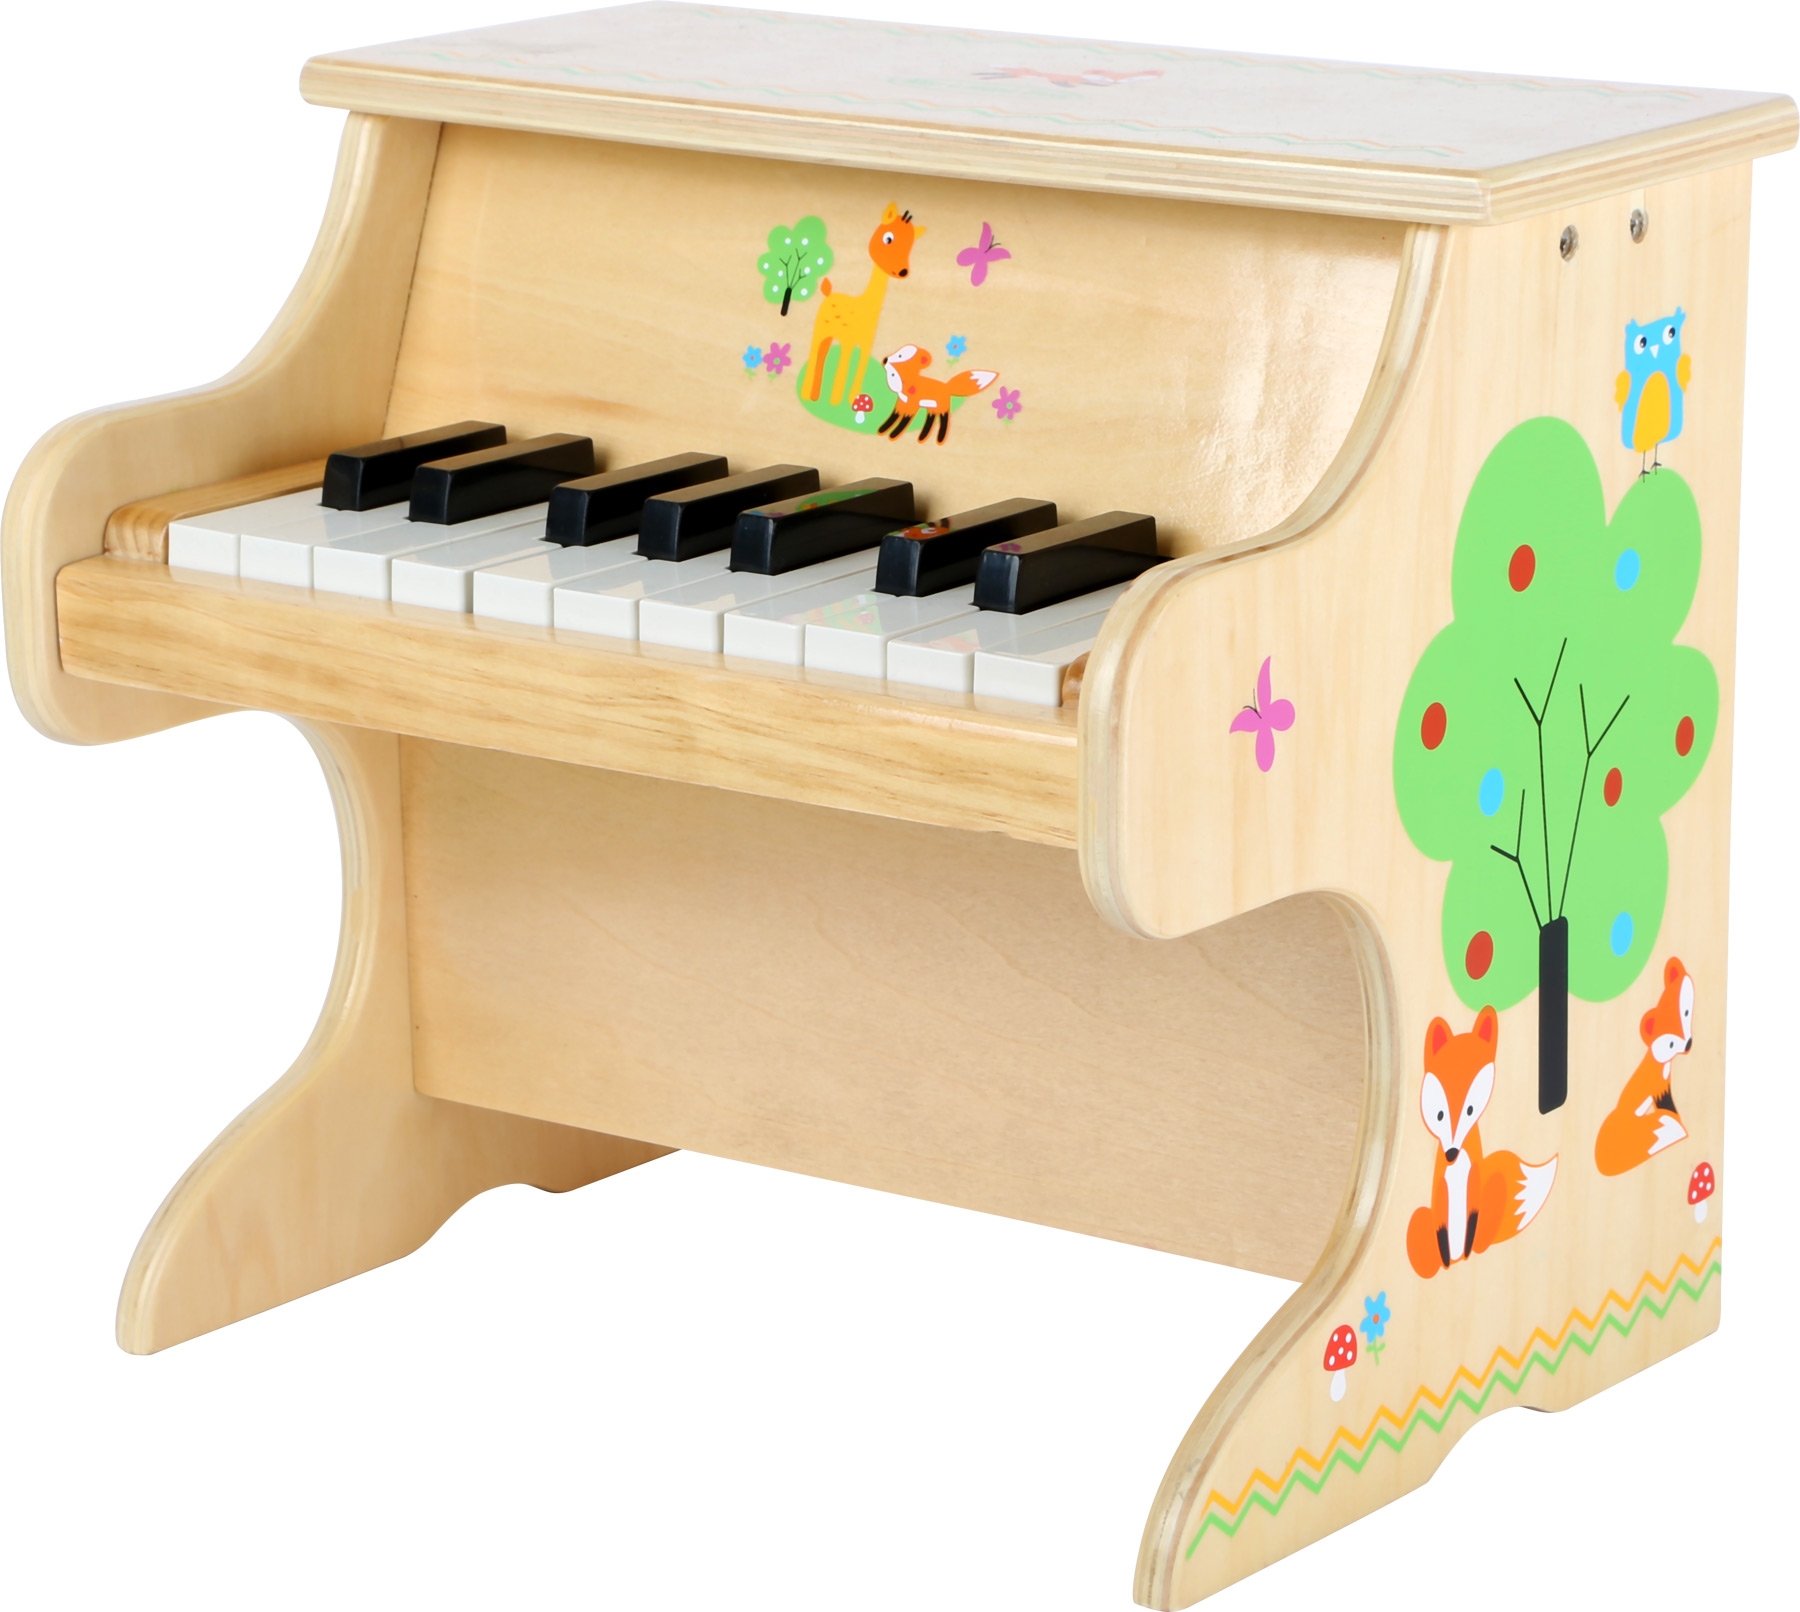 Piano dřevěné- dětský hudební nástroj